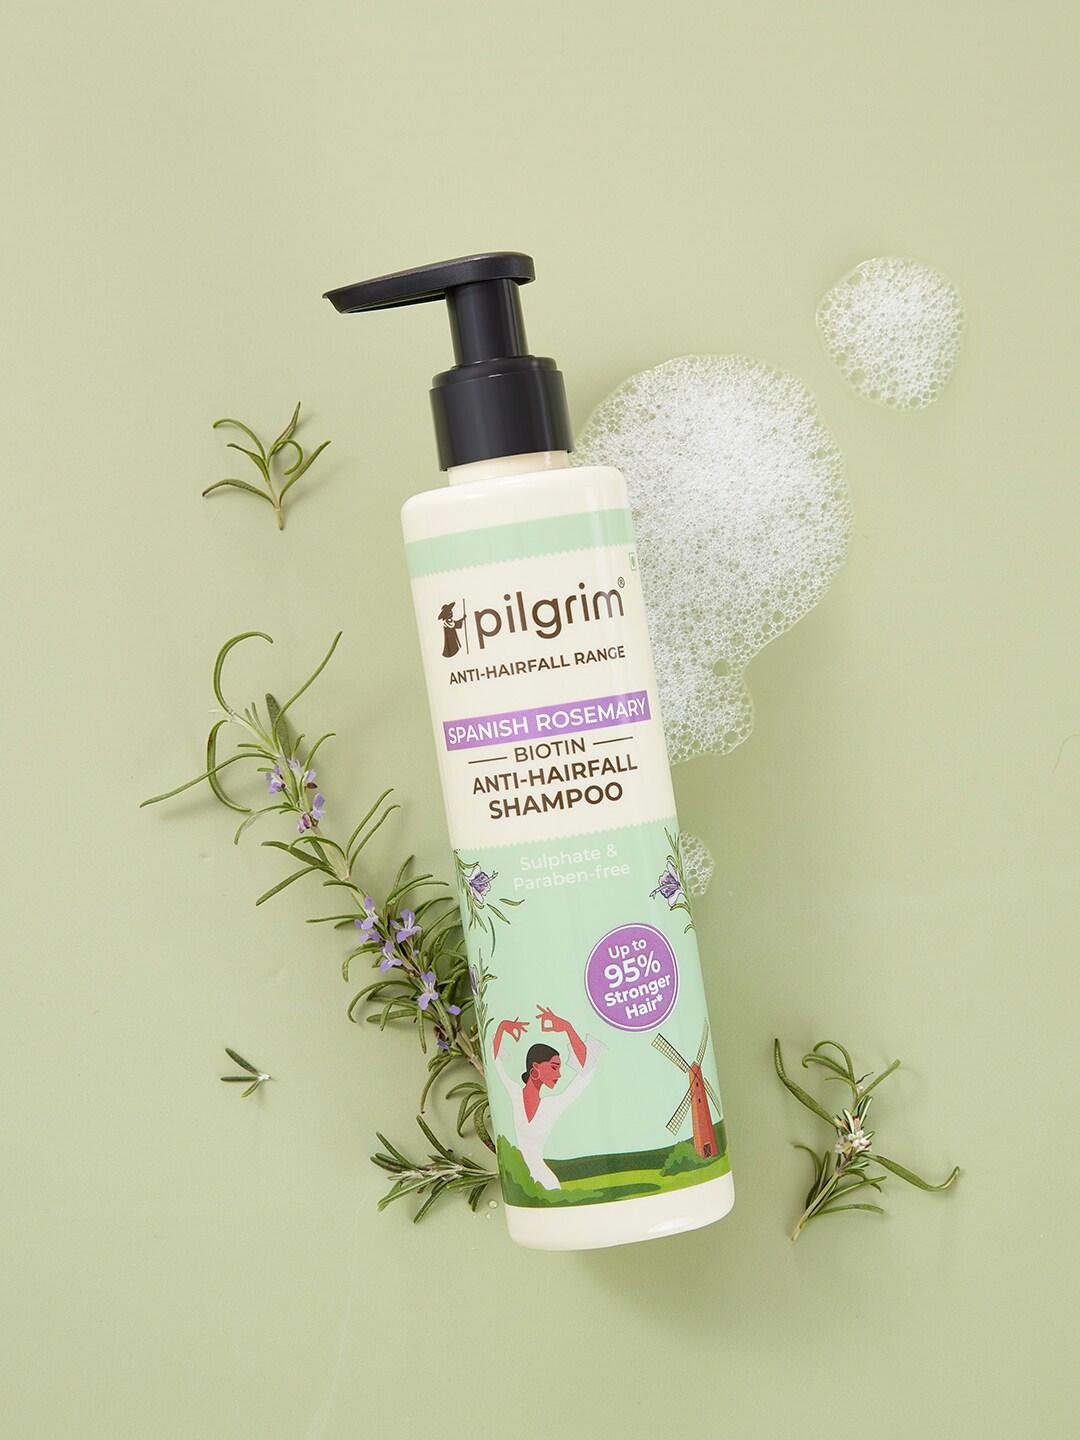 Pilgrim Rosemary & Biotin Anti-Hairfall Shampoo for Reducing Hair Loss & Breakage - 200ml